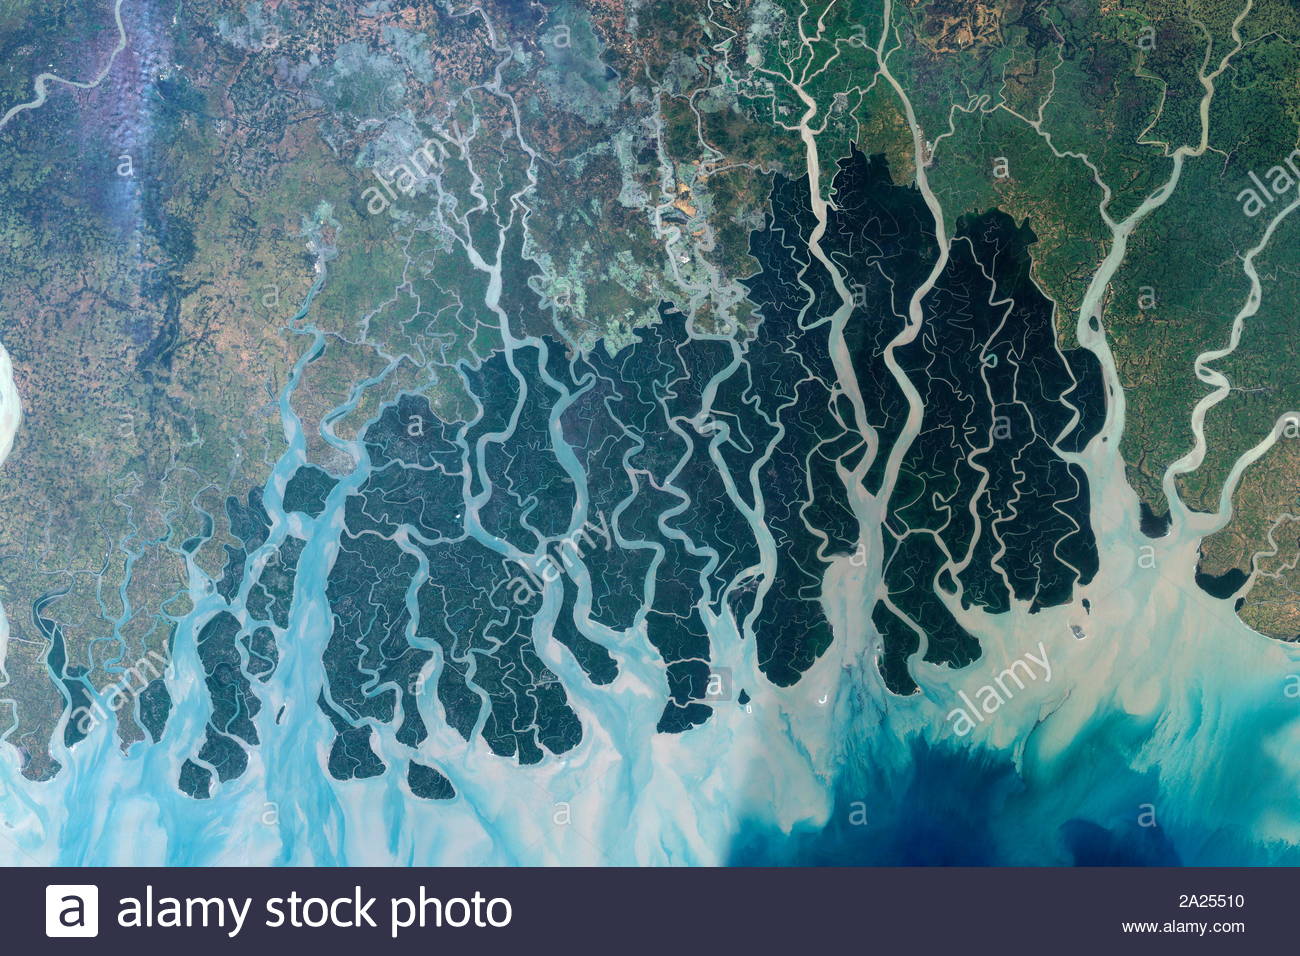 Immagine satellitare della Sundarbans in Bangladesh. 2006. La Sundarbans è una vasta foresta nella regione costiera del golfo del Bengala, considerata una delle meraviglie naturali del mondo, Foto Stock